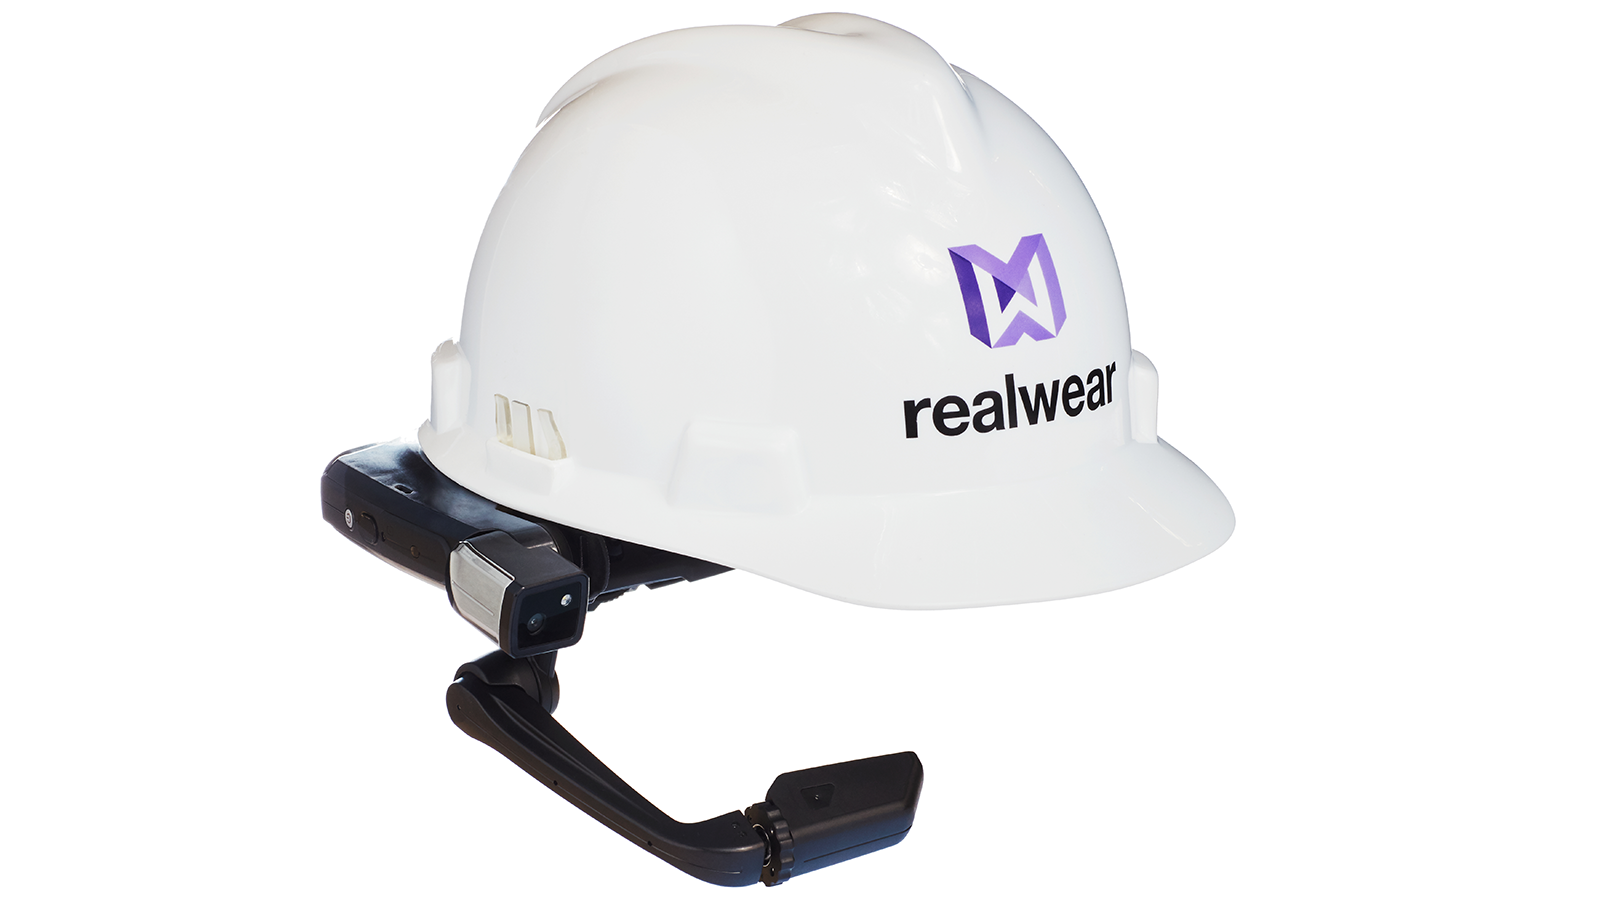 Hình ảnh về một chiếc mũ bảo hiểm của RealWear.